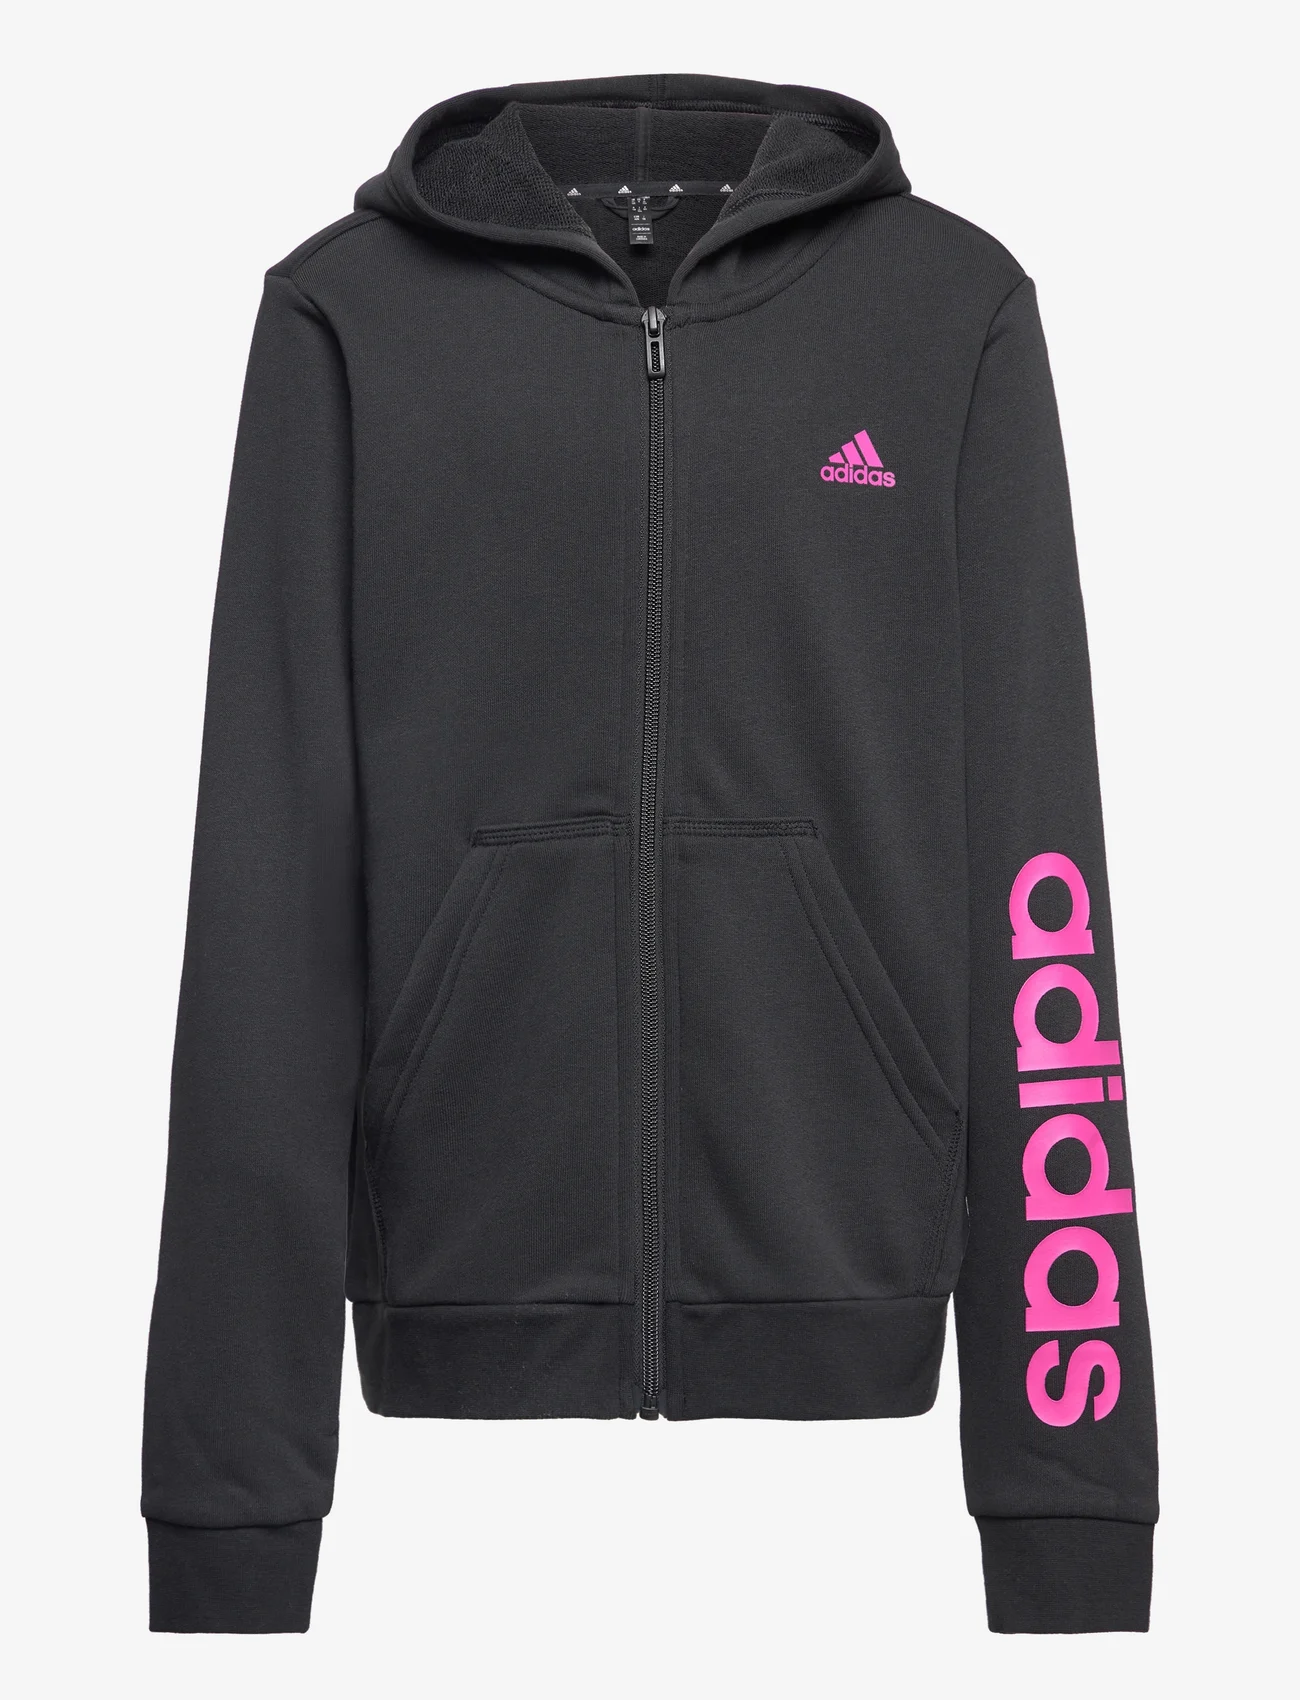 adidas Sportswear - Essentials Linear Logo Full-Zip Hoodie - hoodies - black/selubl - 0